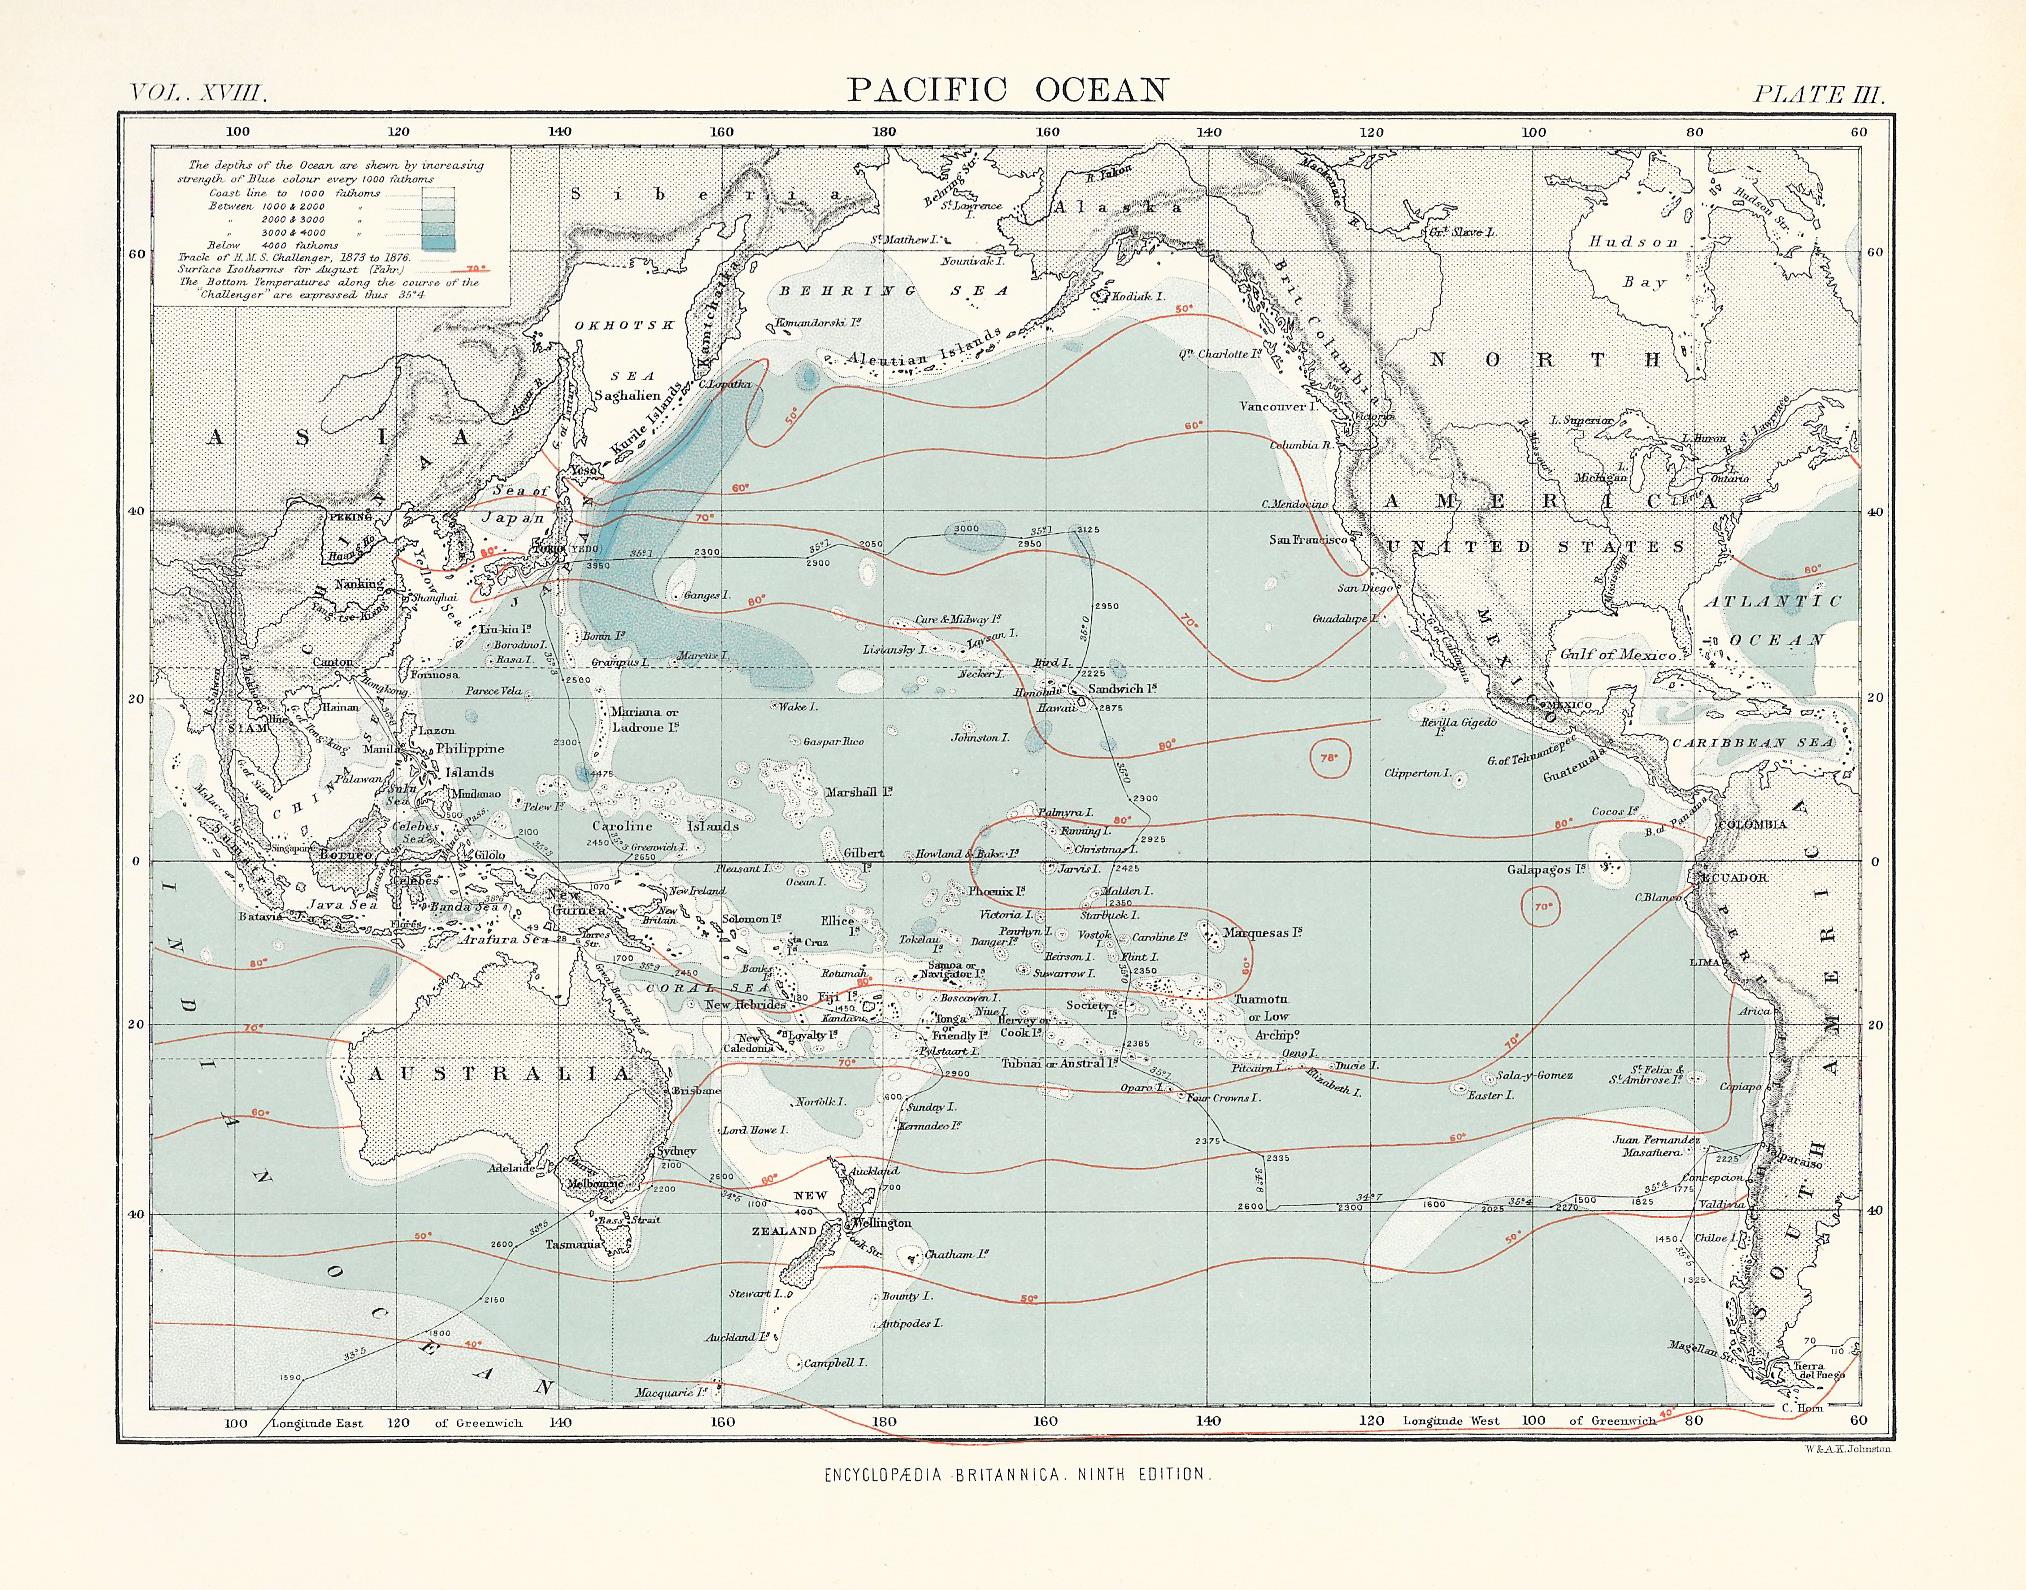 Pacific-Ocean-antique-map-Encyclopaedia-Britannica